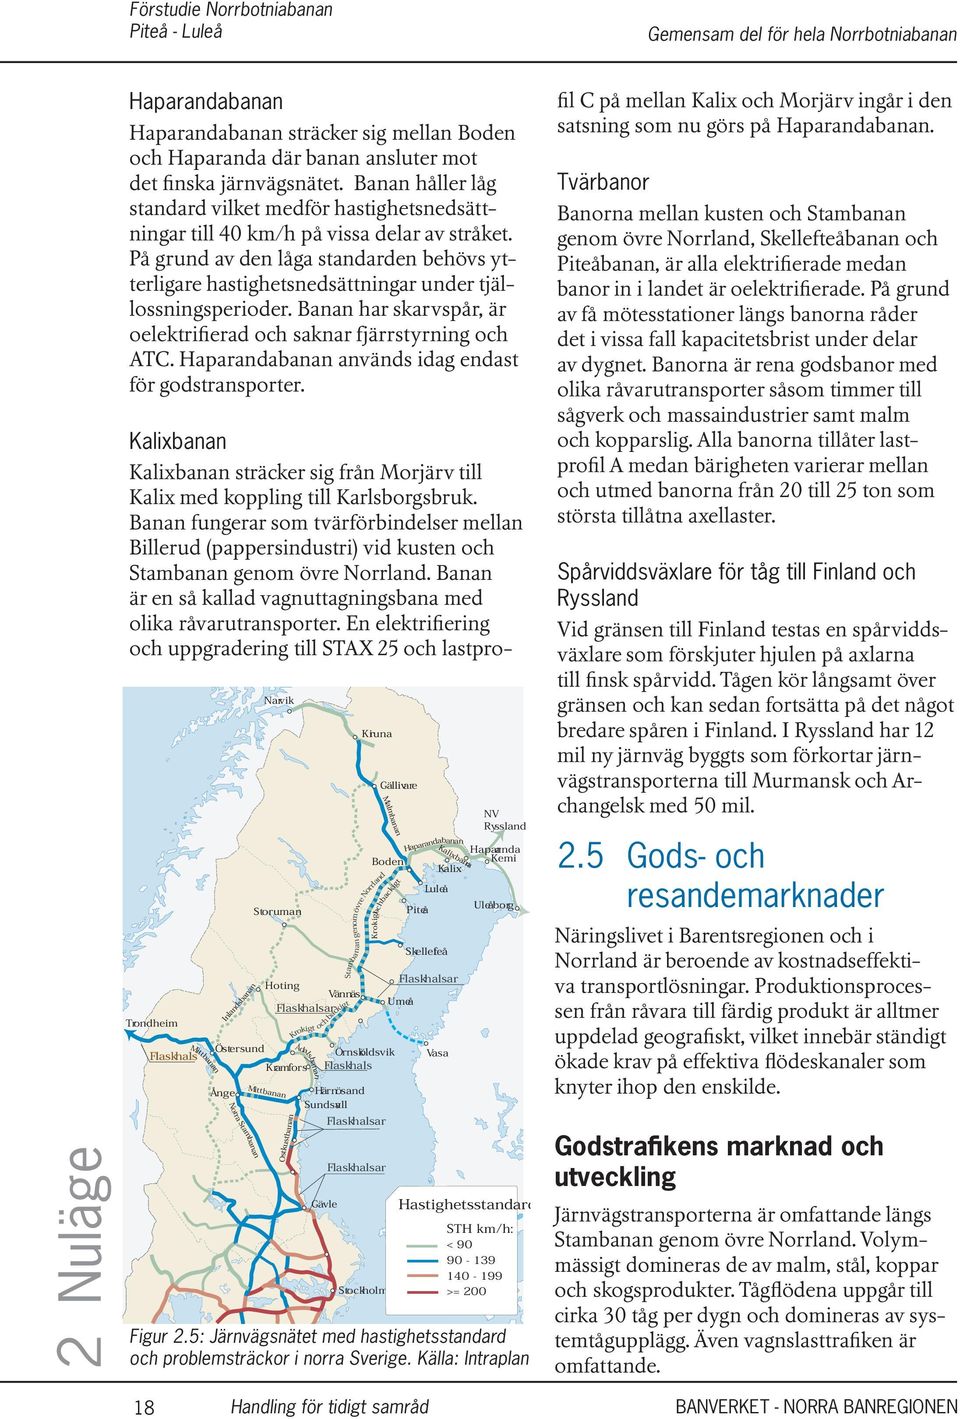 Hapardab vänds idag endast för godstrsporter. Kalixb Kalixb sträcker sig från Morjärv till Kalix med koppling till Karlsborgsbruk.